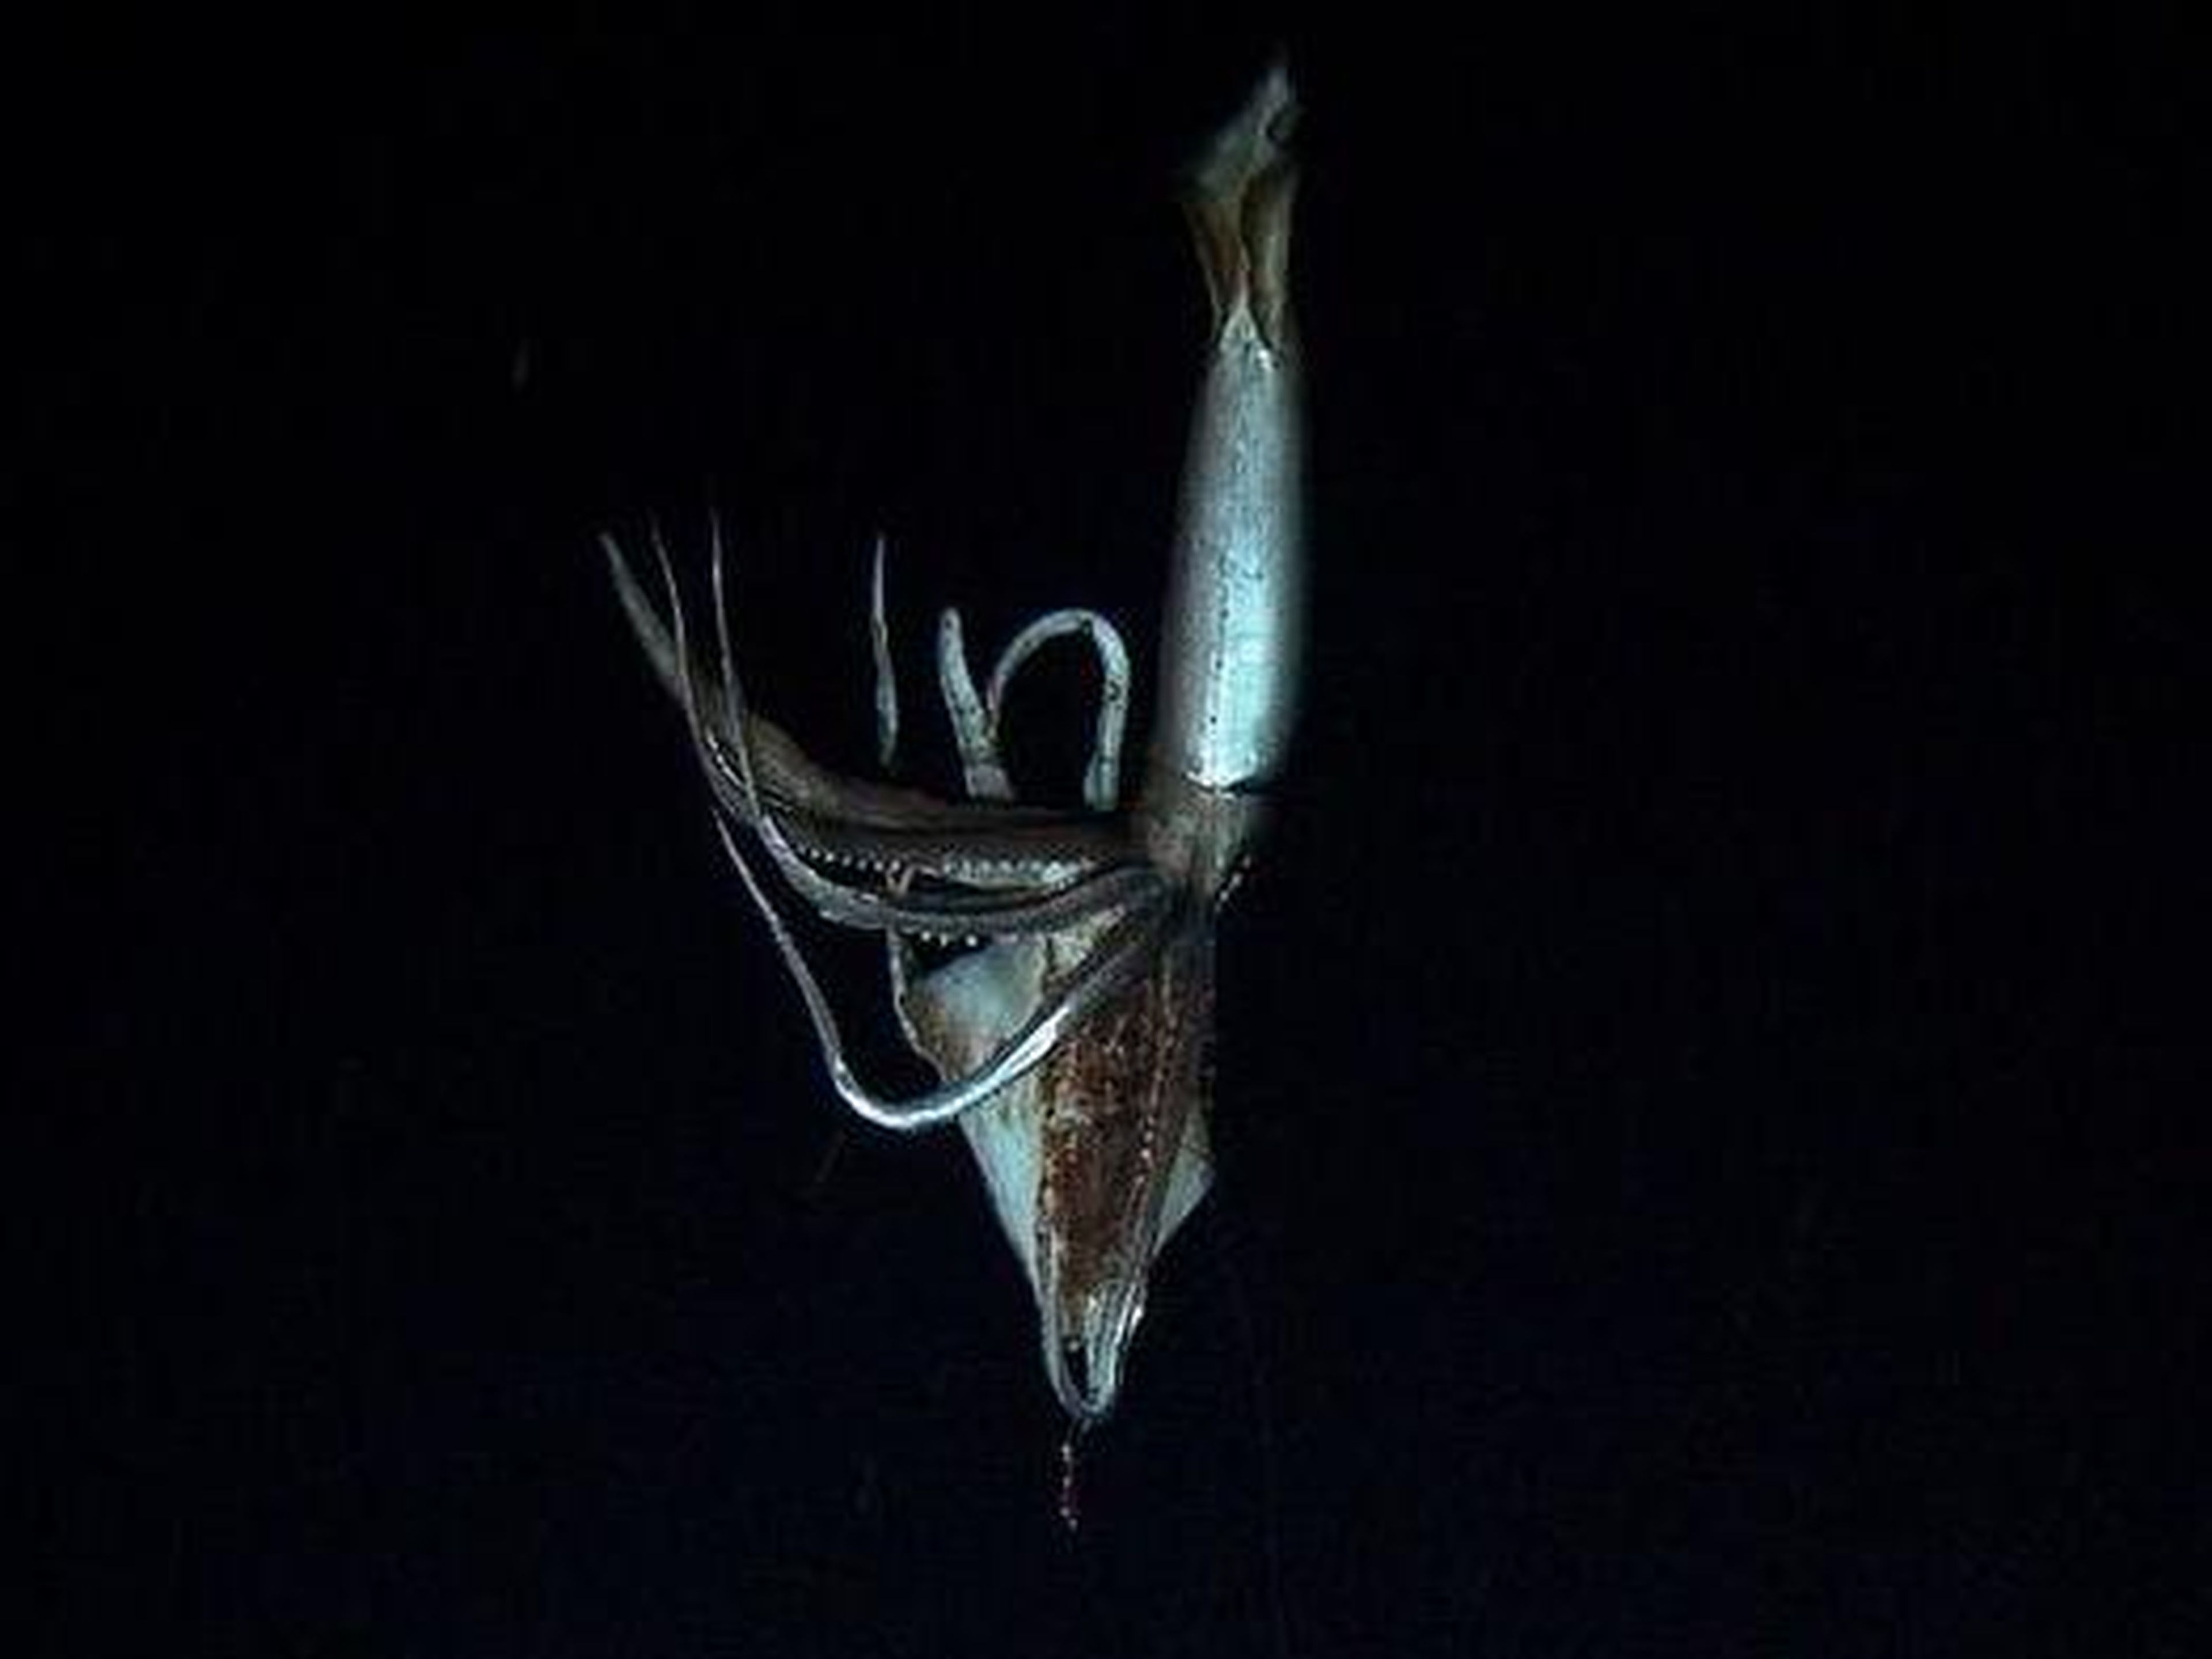 Un avistamiento raro de un calamar gigante, cerca de las islas Ogasawara en Japón.